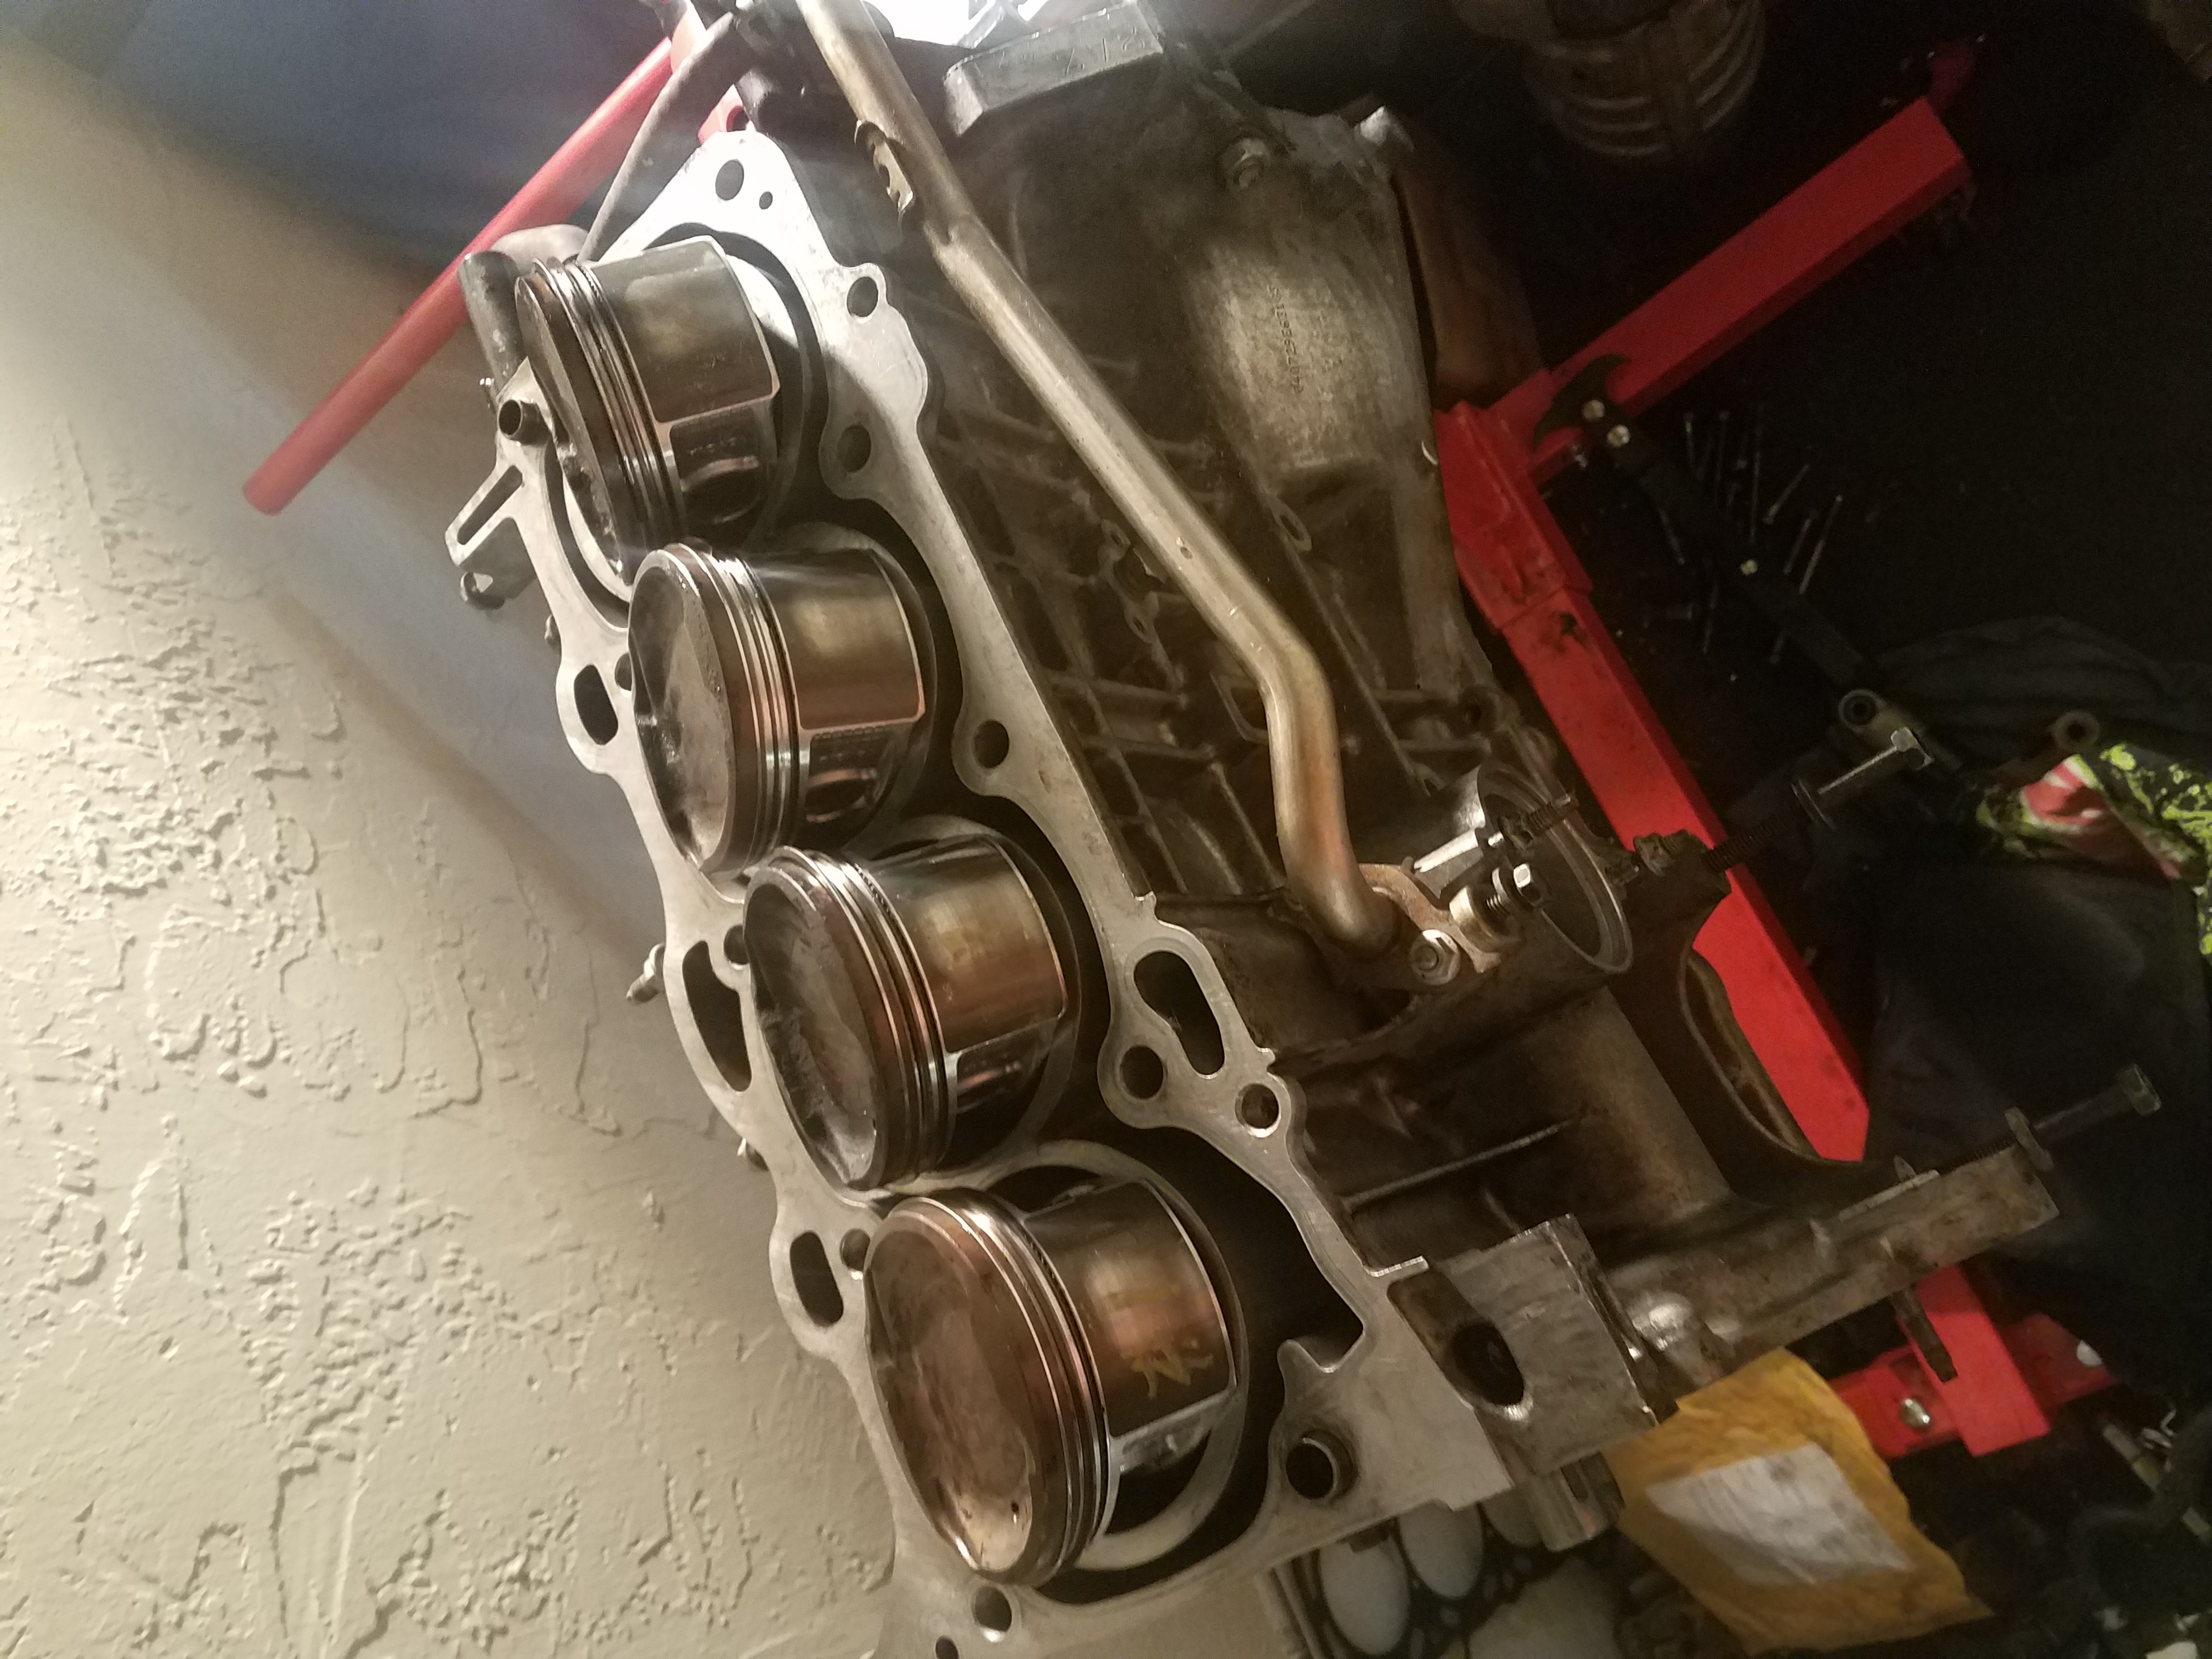 Tc engine rebuild